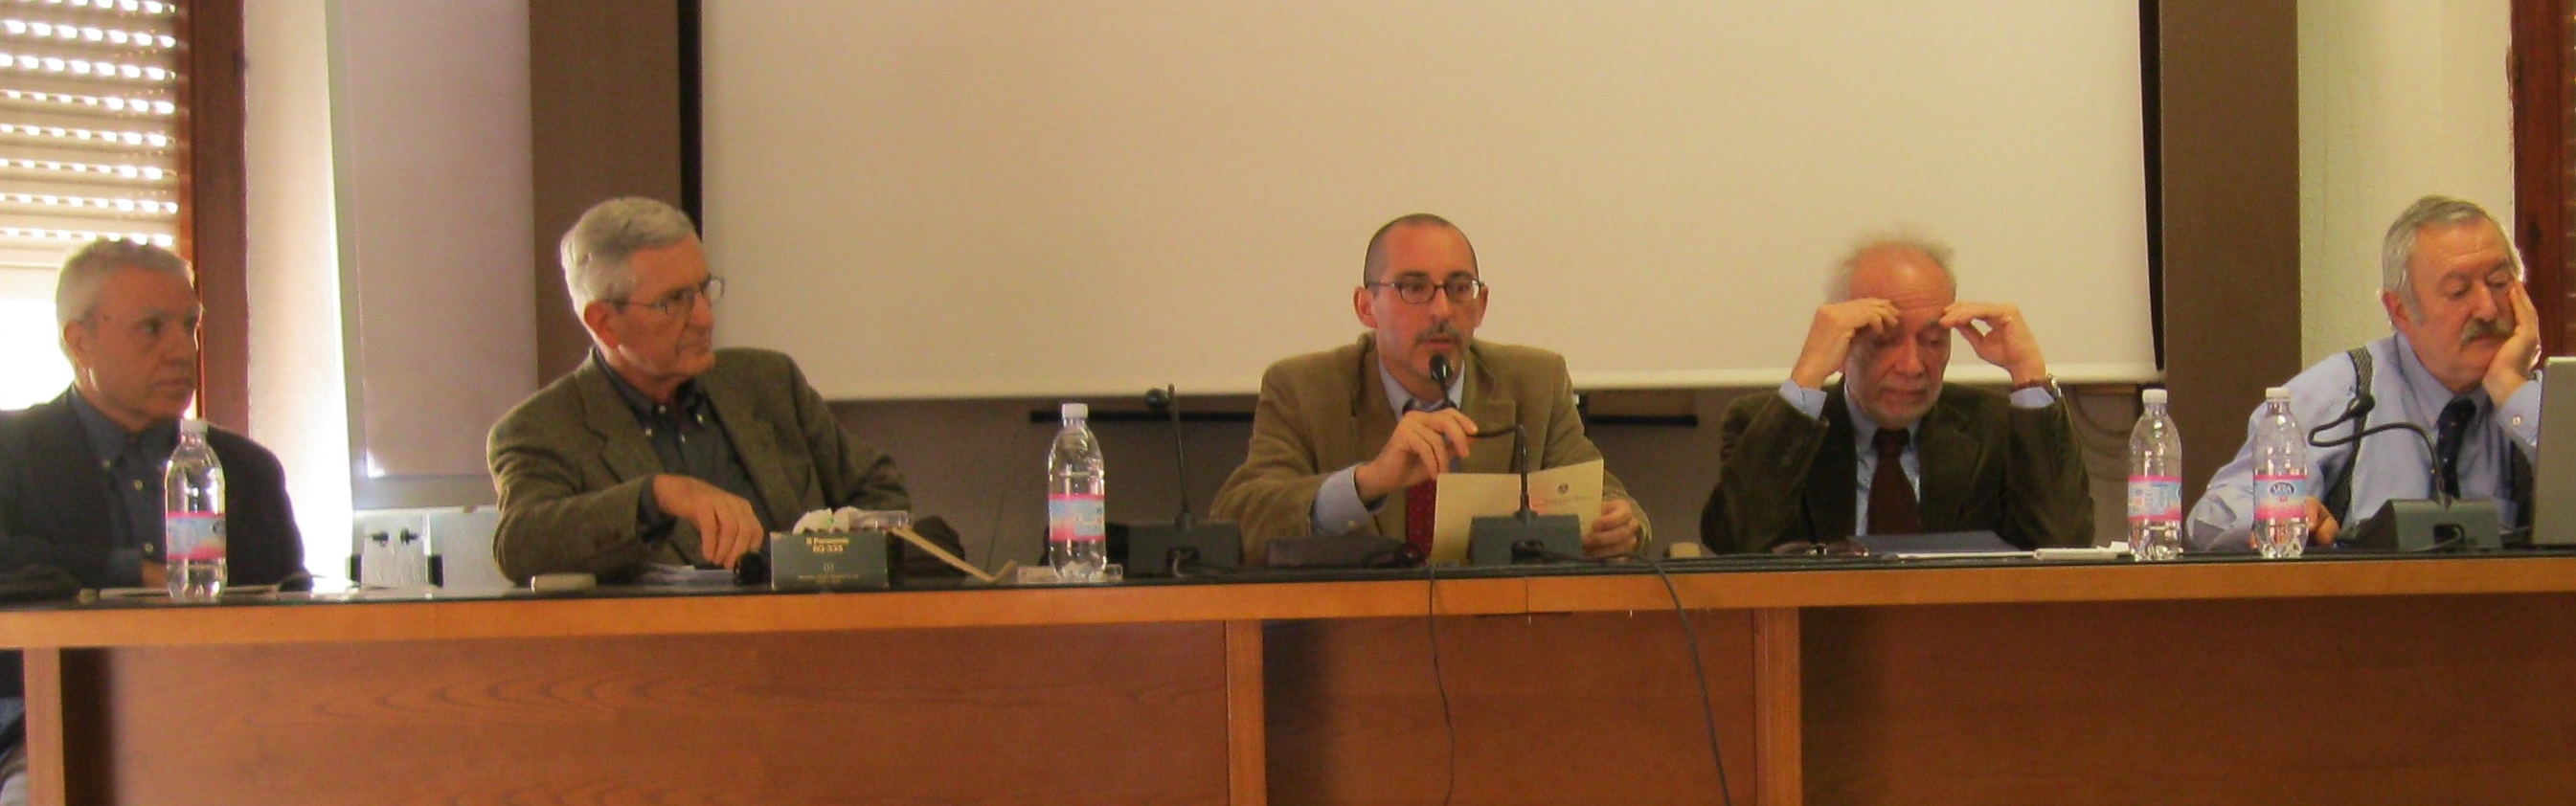 7.Con Orlando Lentini, Marco Zurru, Gian Primo Cella, Gianfranco Bottazzi a Cagliari per il convegno organizzato in suo onore nel 2012